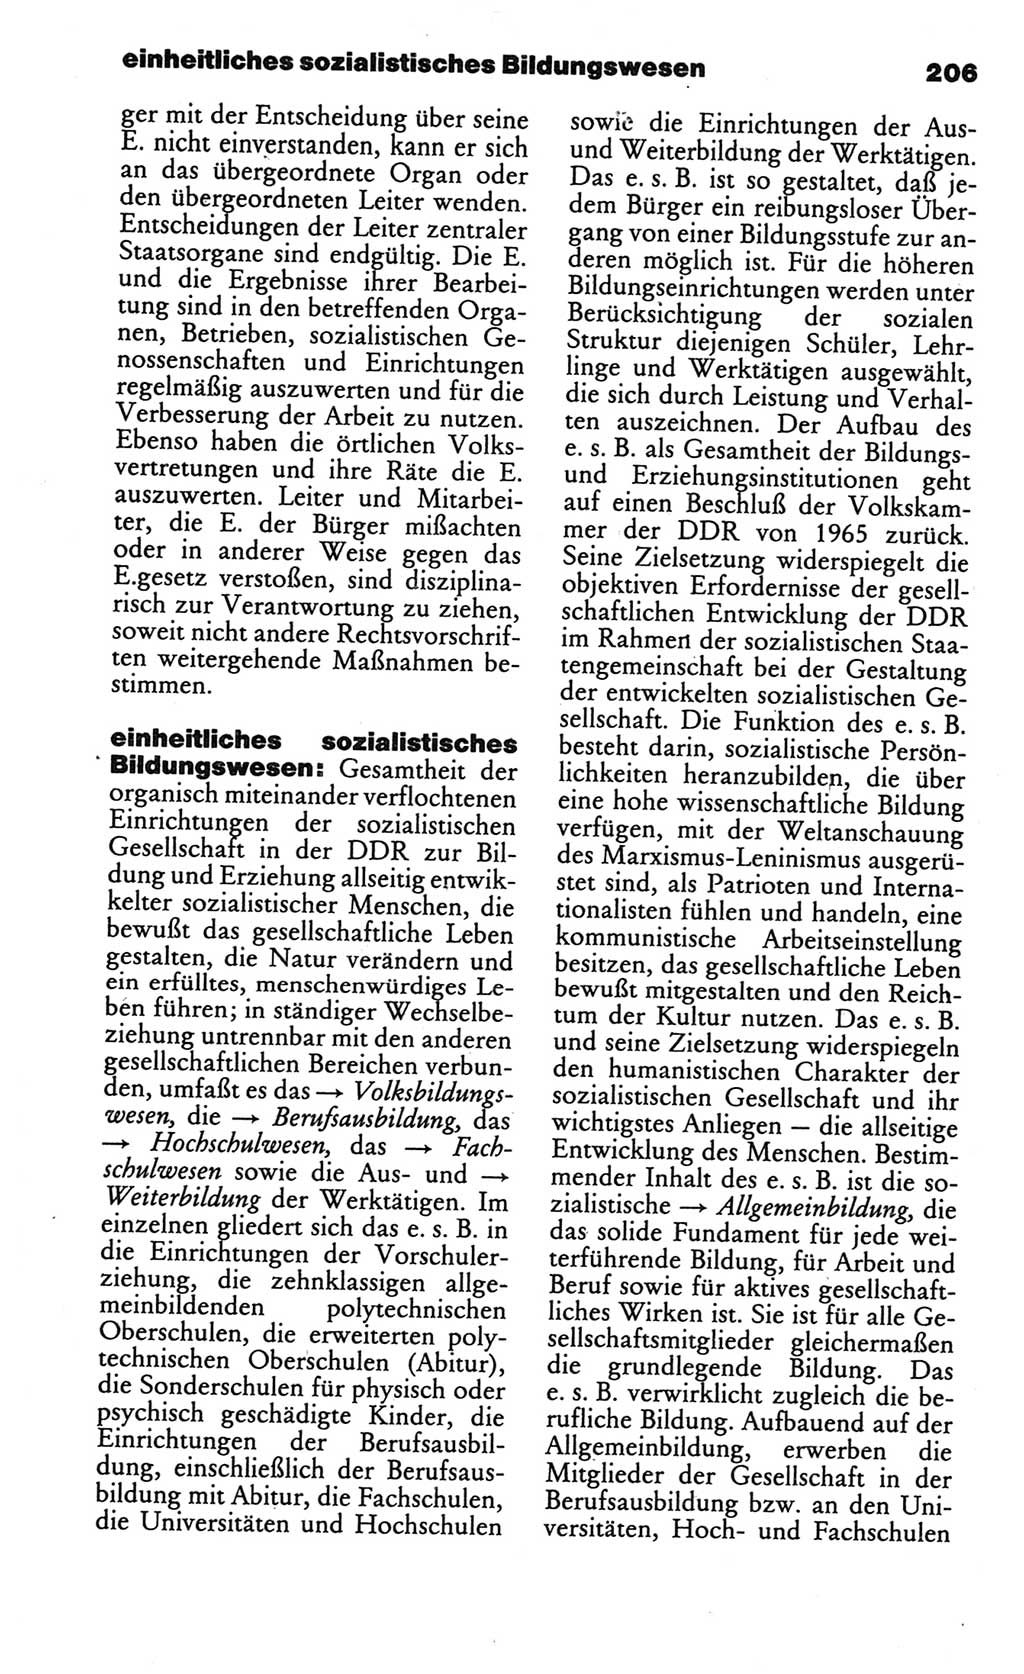 Kleines politisches Wörterbuch [Deutsche Demokratische Republik (DDR)] 1986, Seite 206 (Kl. pol. Wb. DDR 1986, S. 206)